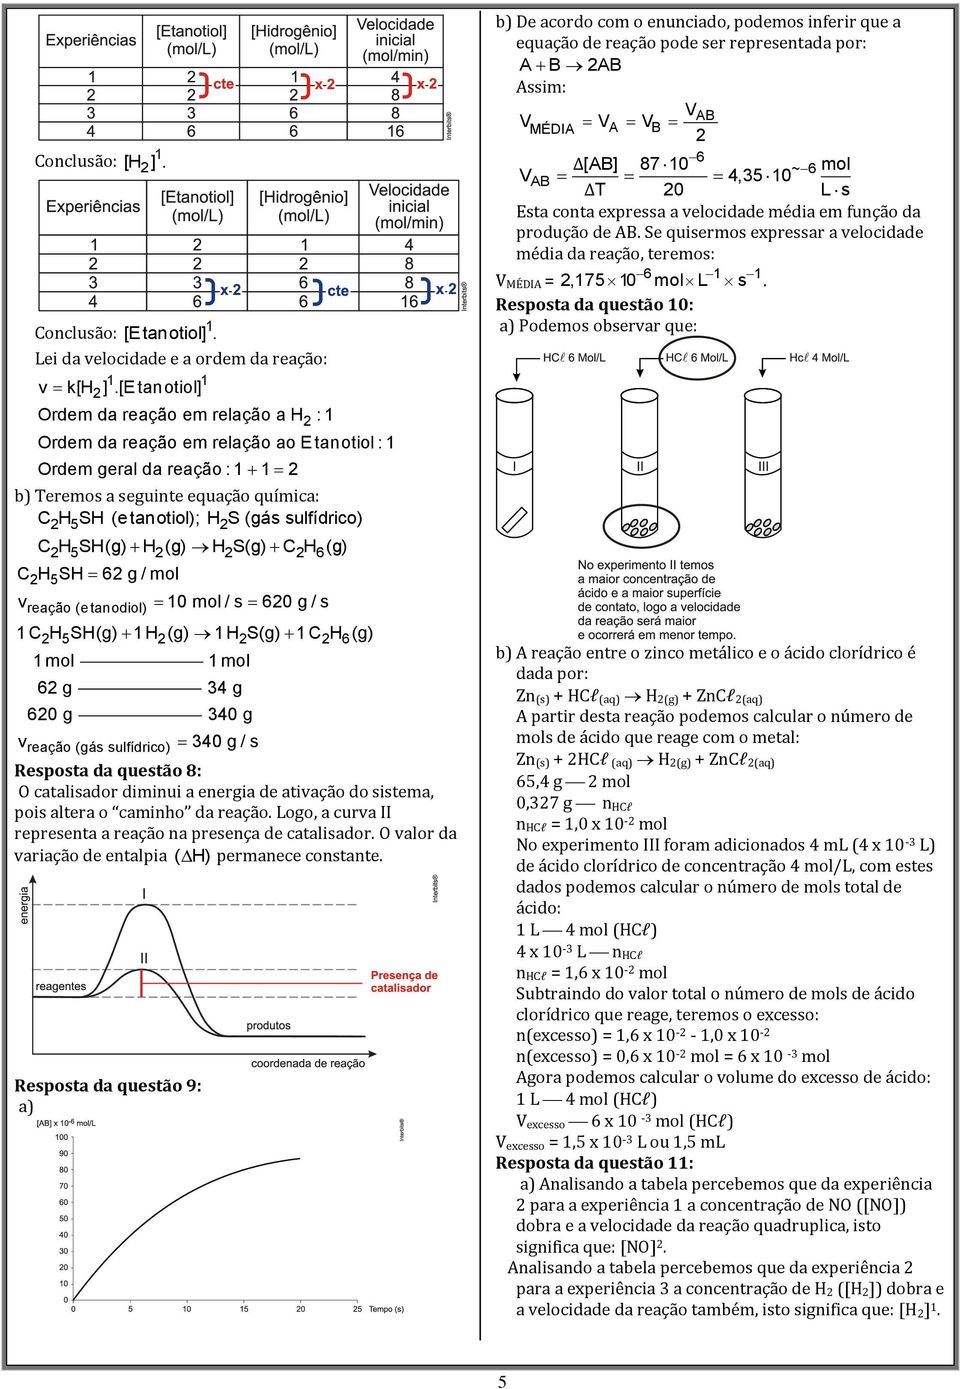 SH(g) H (g) H S(g) C H (g) 5 6 CH5SH 6 g / mol vreação (e tanodiol) 0 mol / s 60 g / s CH5SH(g) H (g) HS(g) CH 6(g) 6 g 4 g 60 g 40 g vreação (gás sulfídrico) 40 g / s Resposta da questão 8: O